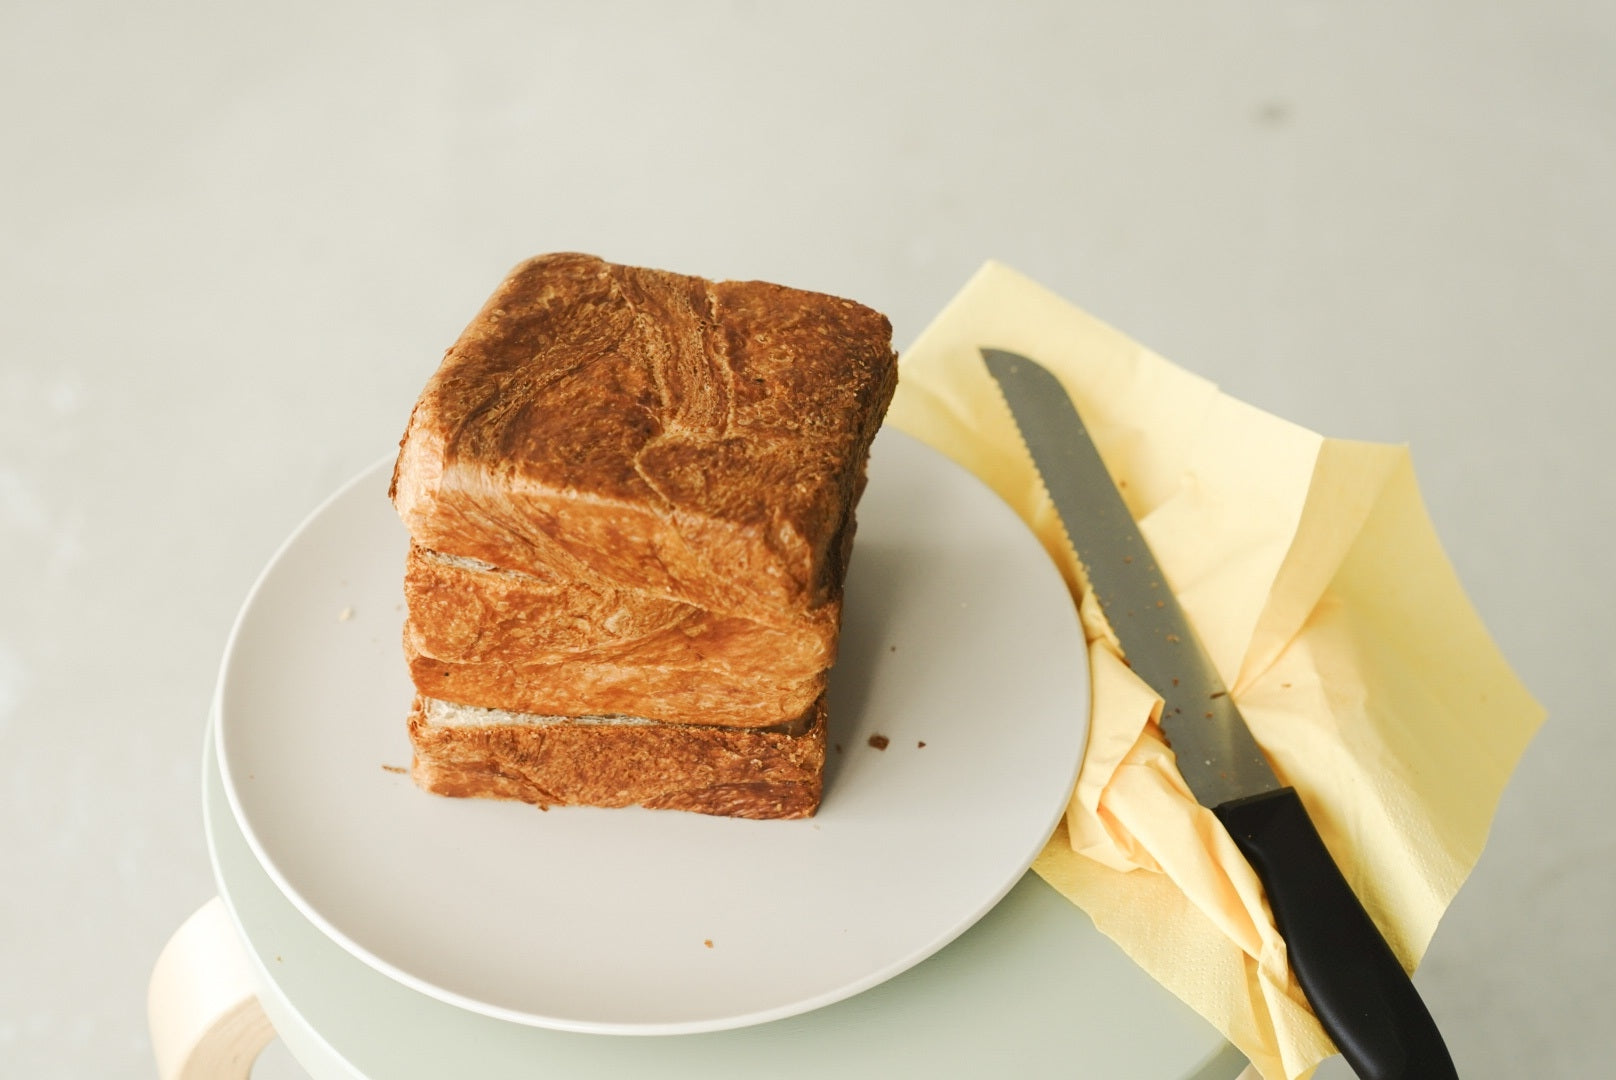 FIROクロワッサン食パン・至高の甘み・ハニーセサミ３斤セット